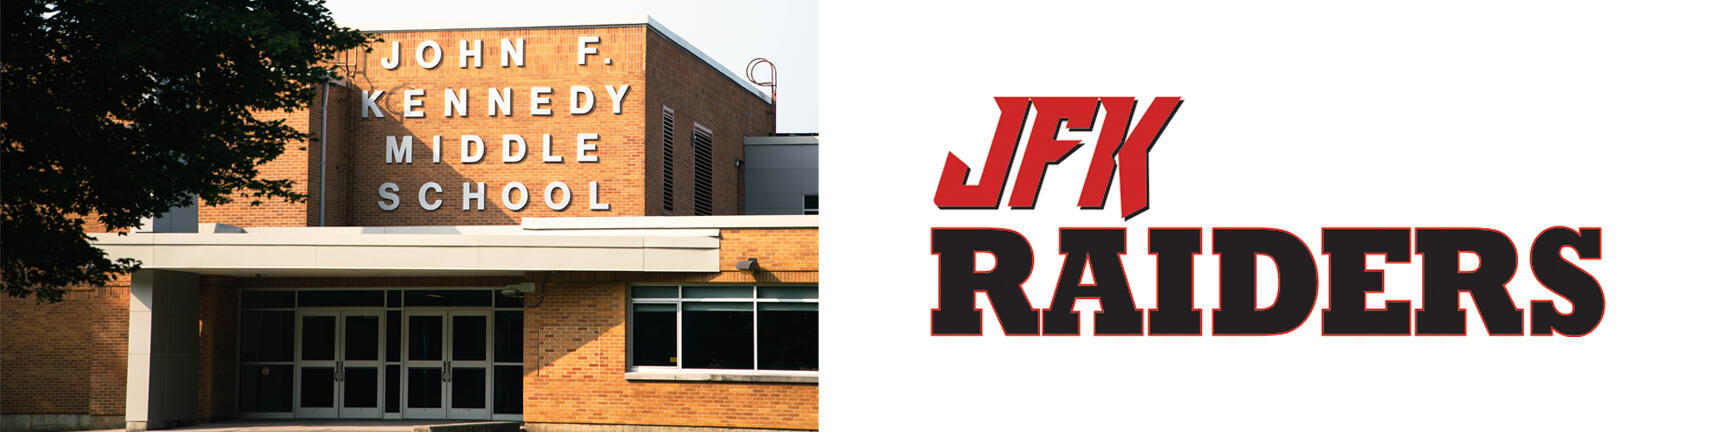 Foto del edificio de la escuela JFK y el logotipo de los JFK Raiders